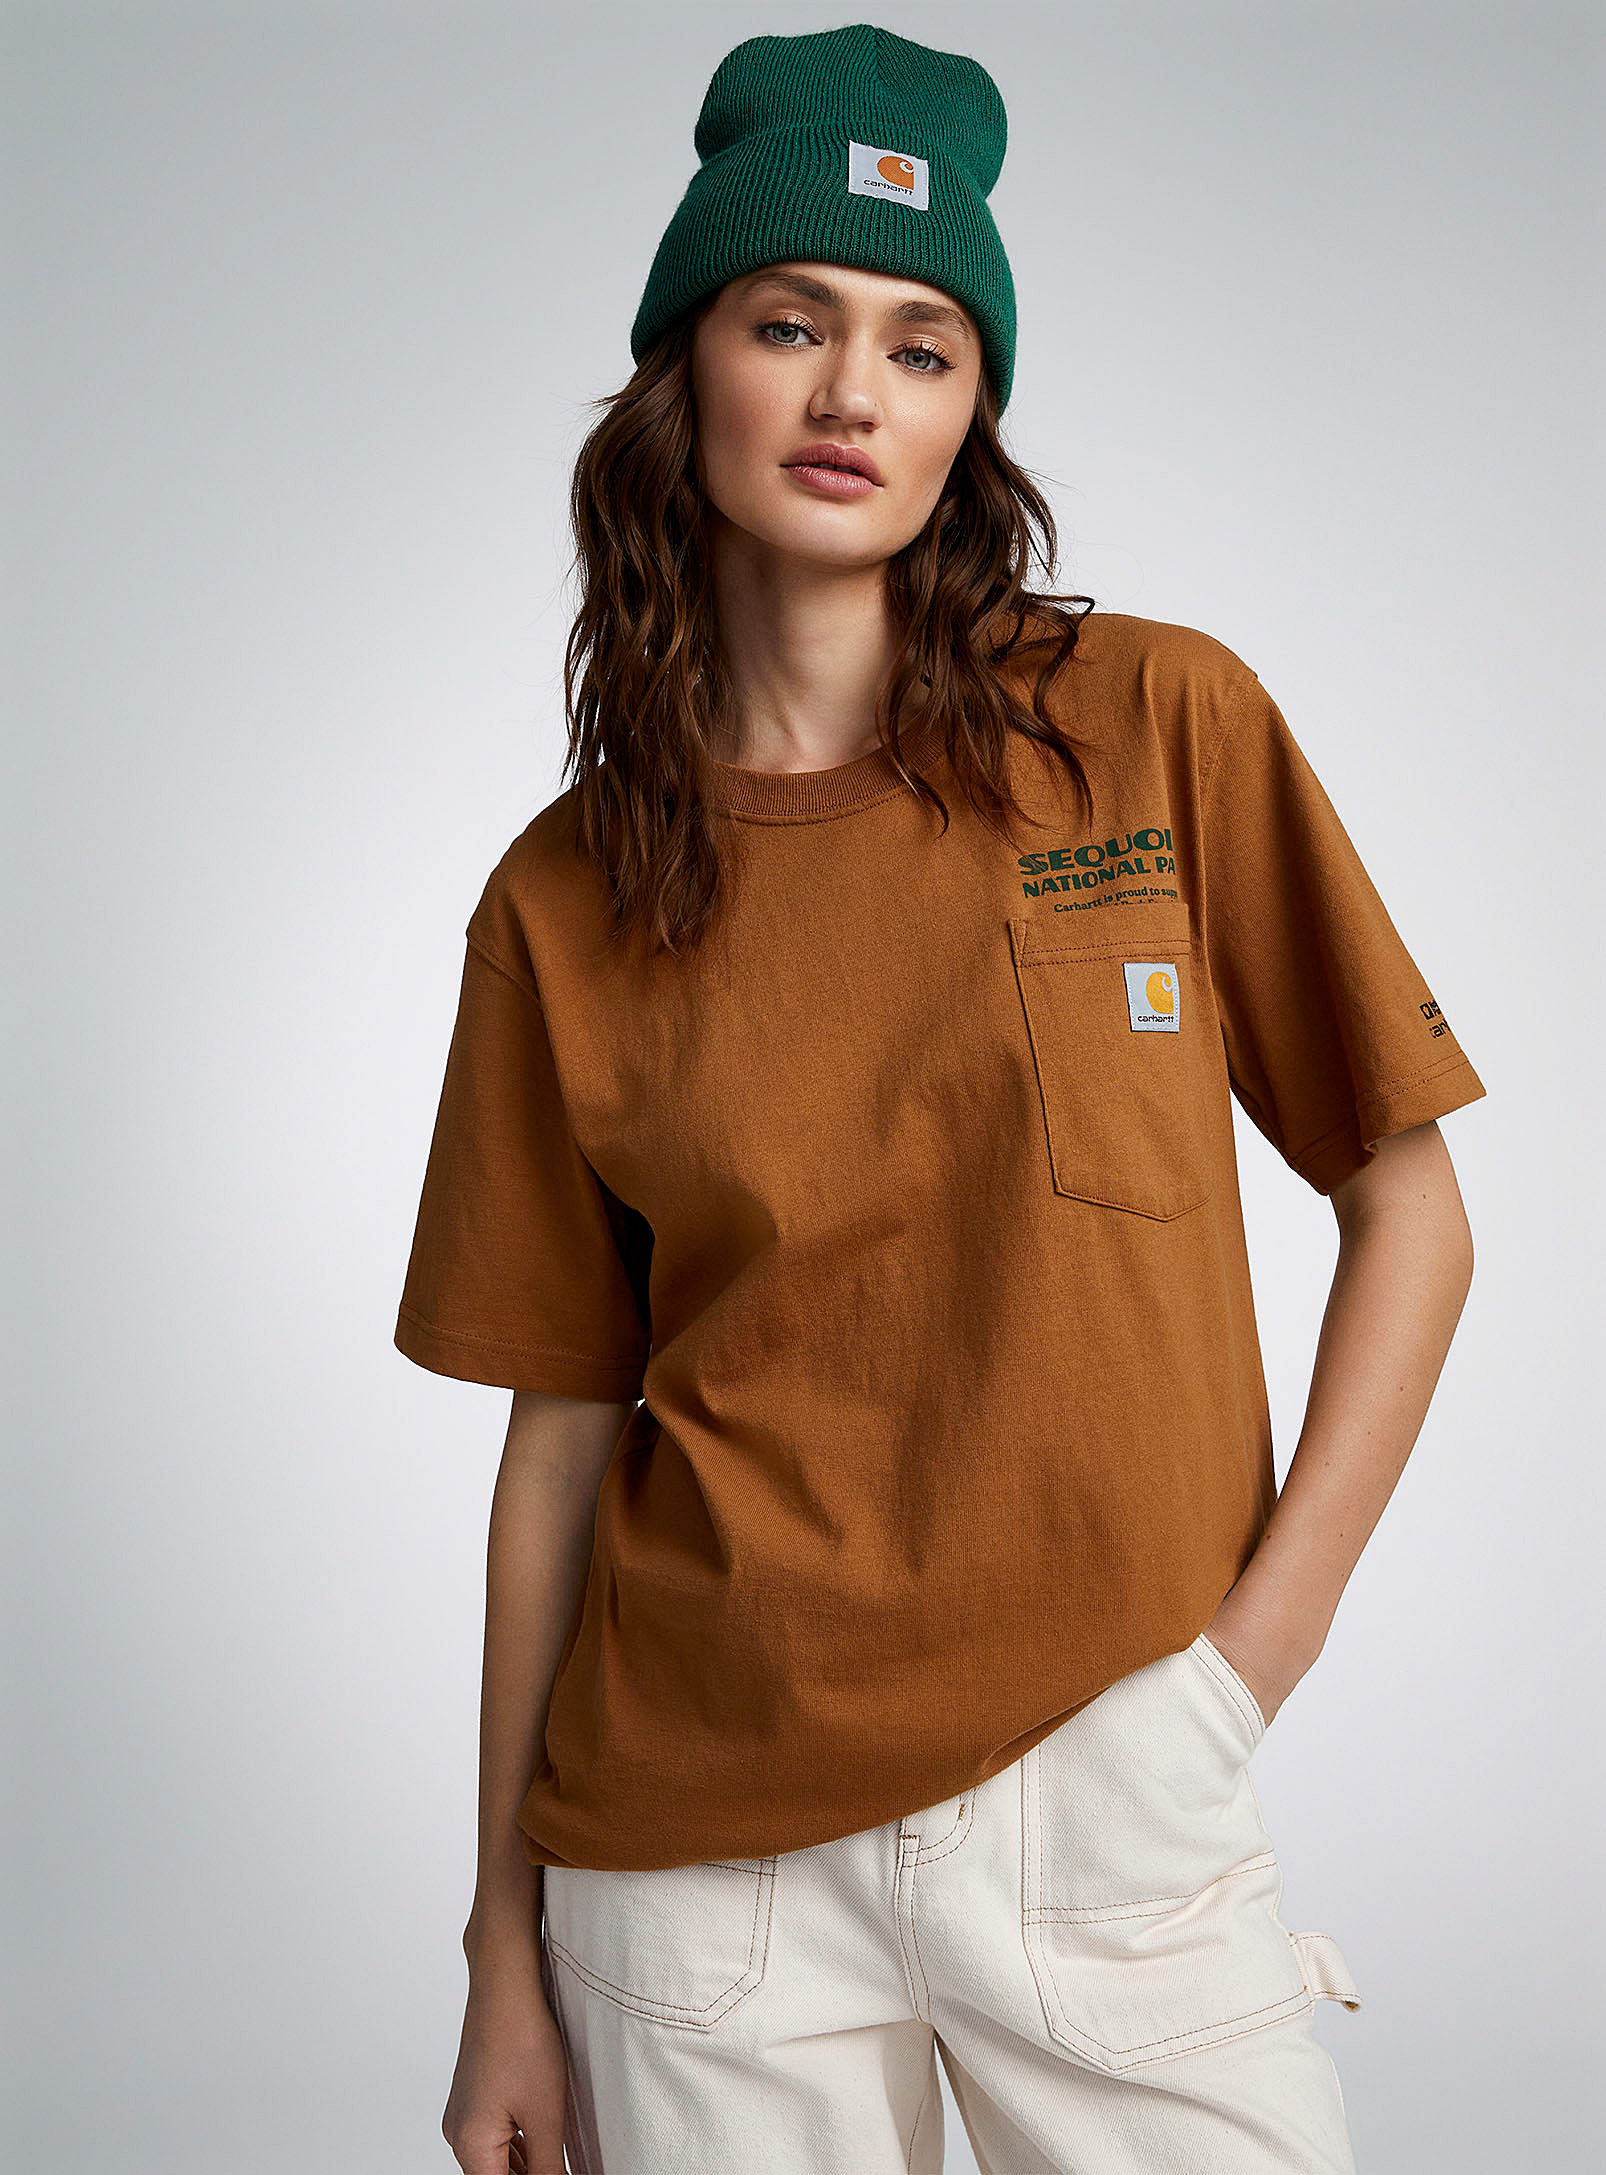 Carhartt - Women's Sequoia National Park T-shirt